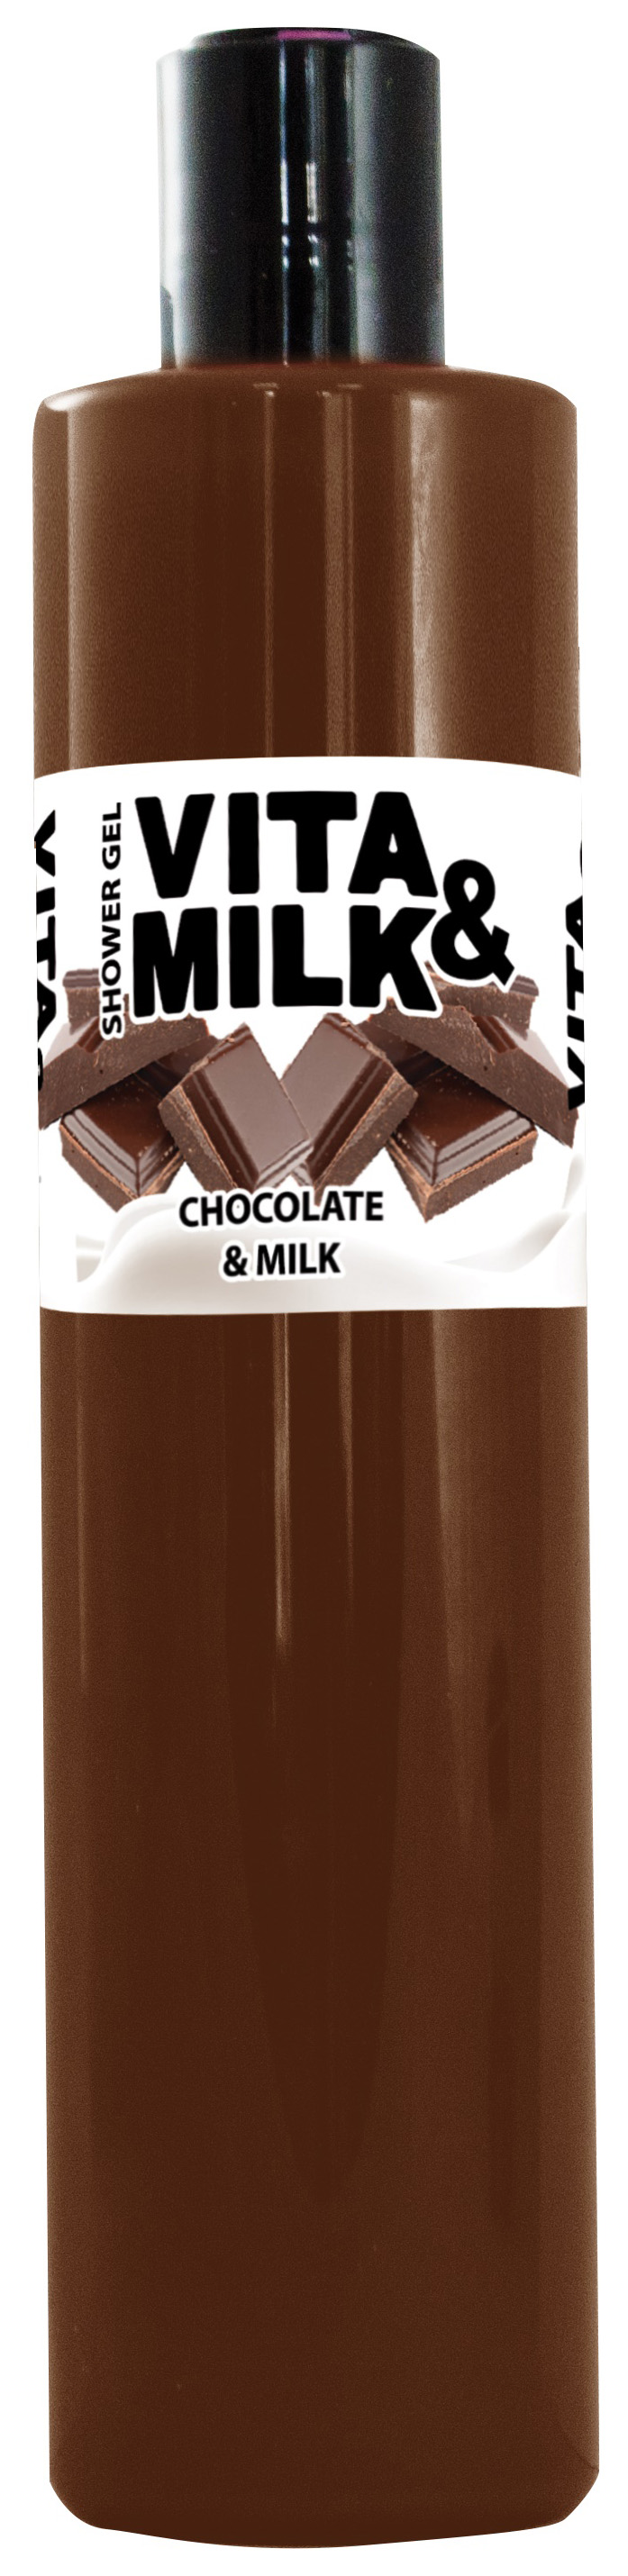 фото Гель для душа vita&milk шоколад и молоко 350 мл